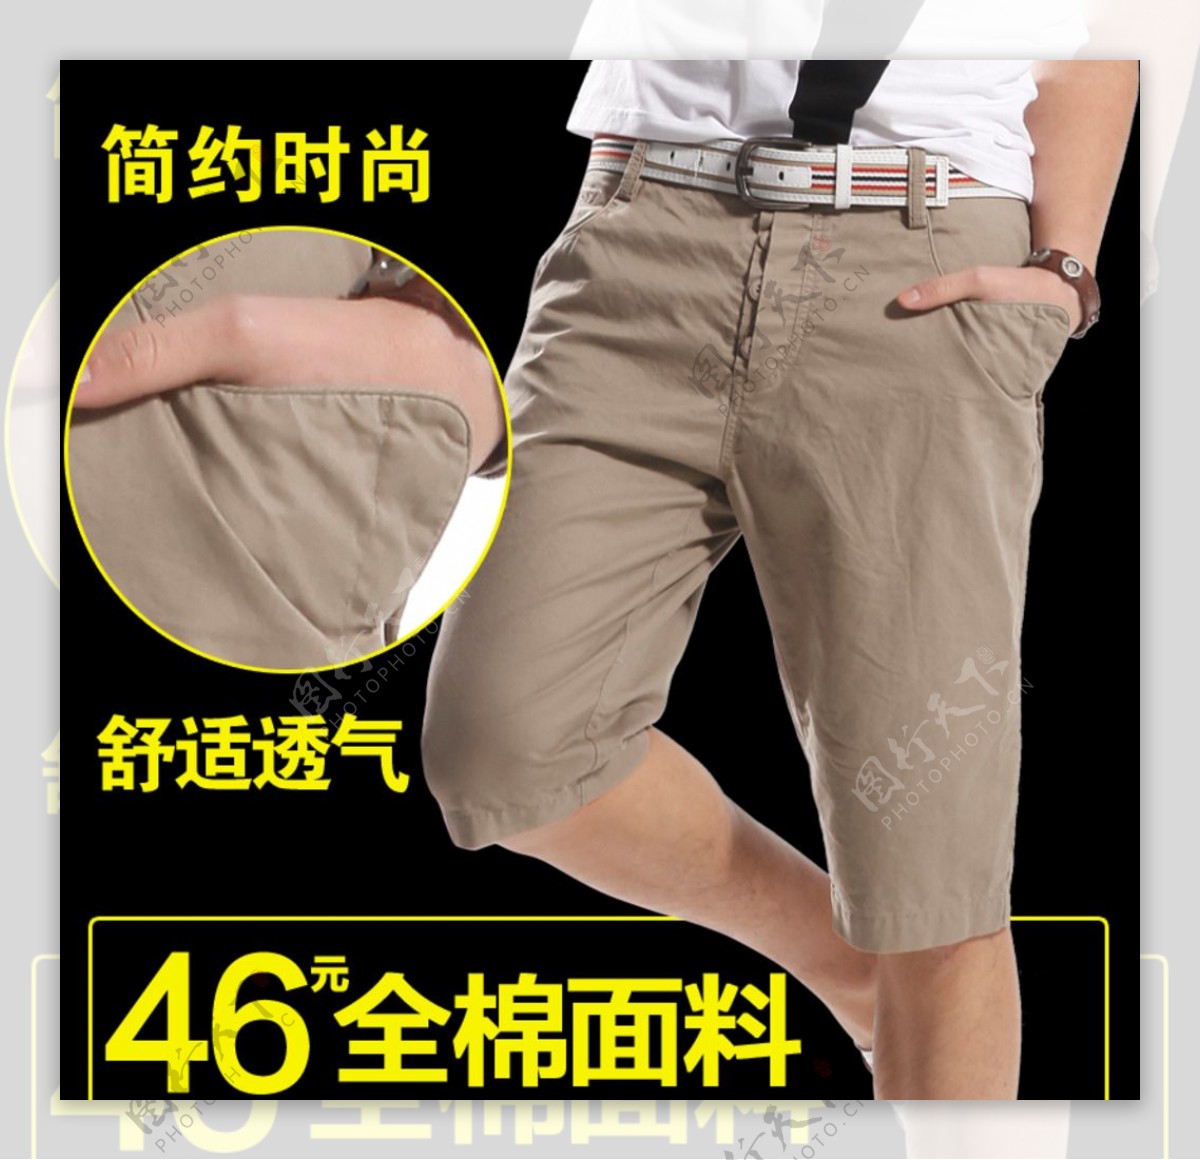 男士短裤展示促销活动